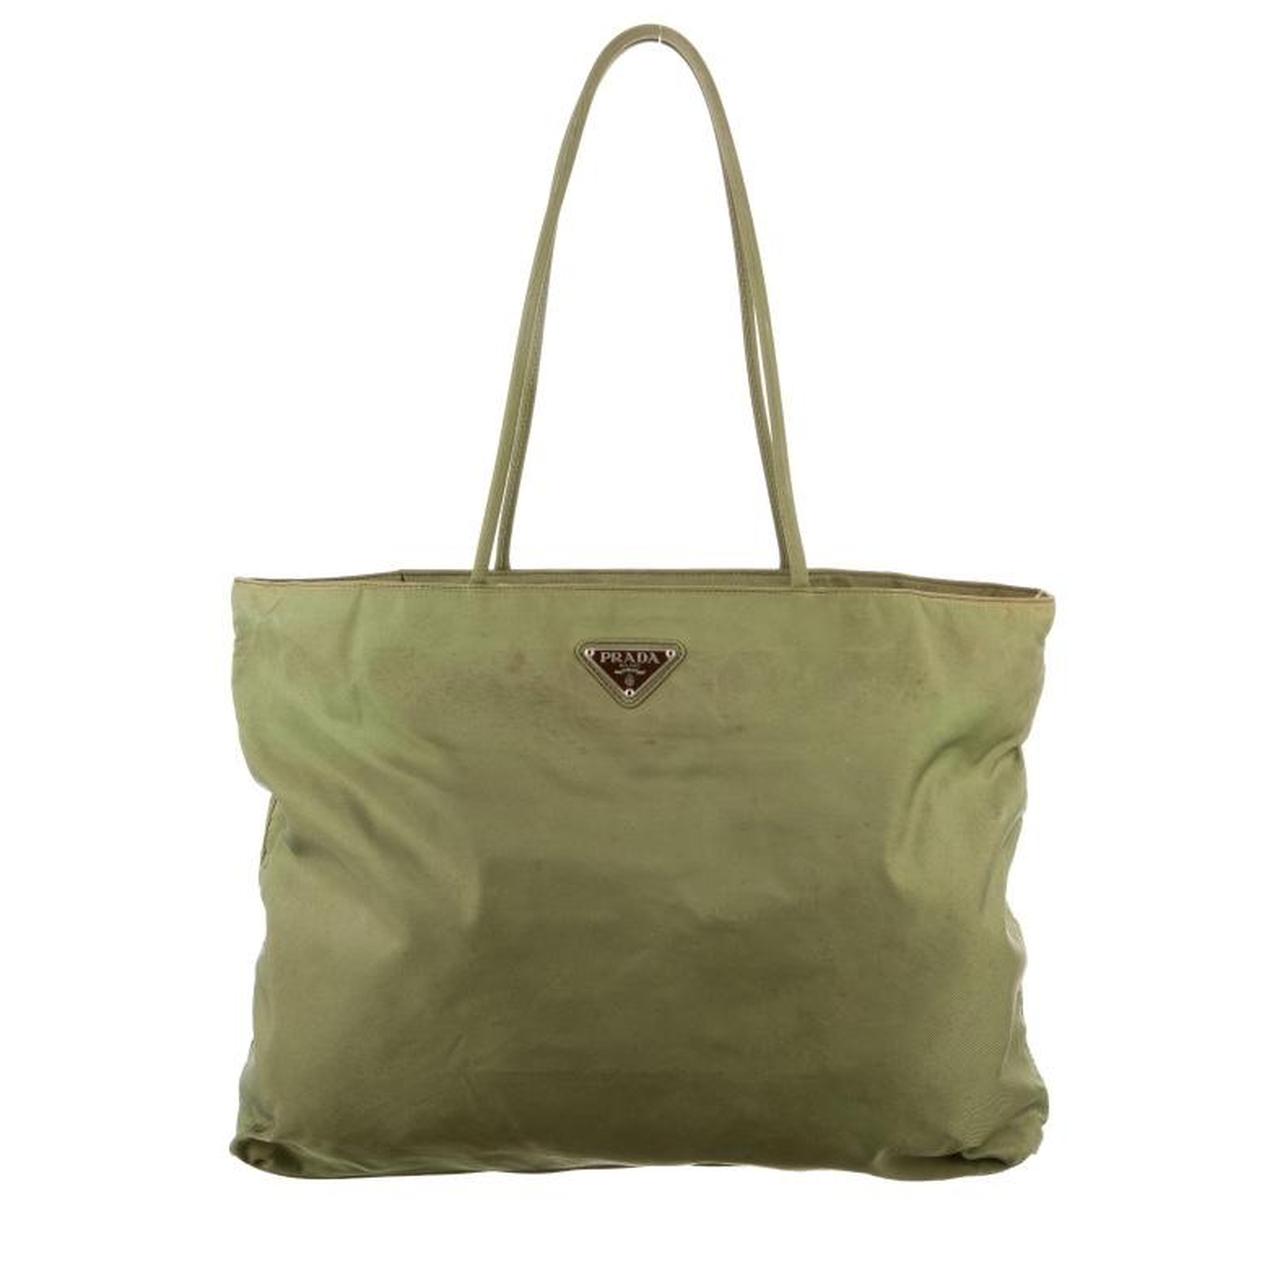 Vintage green Prada shoulder bag. Marks and wear... - Depop